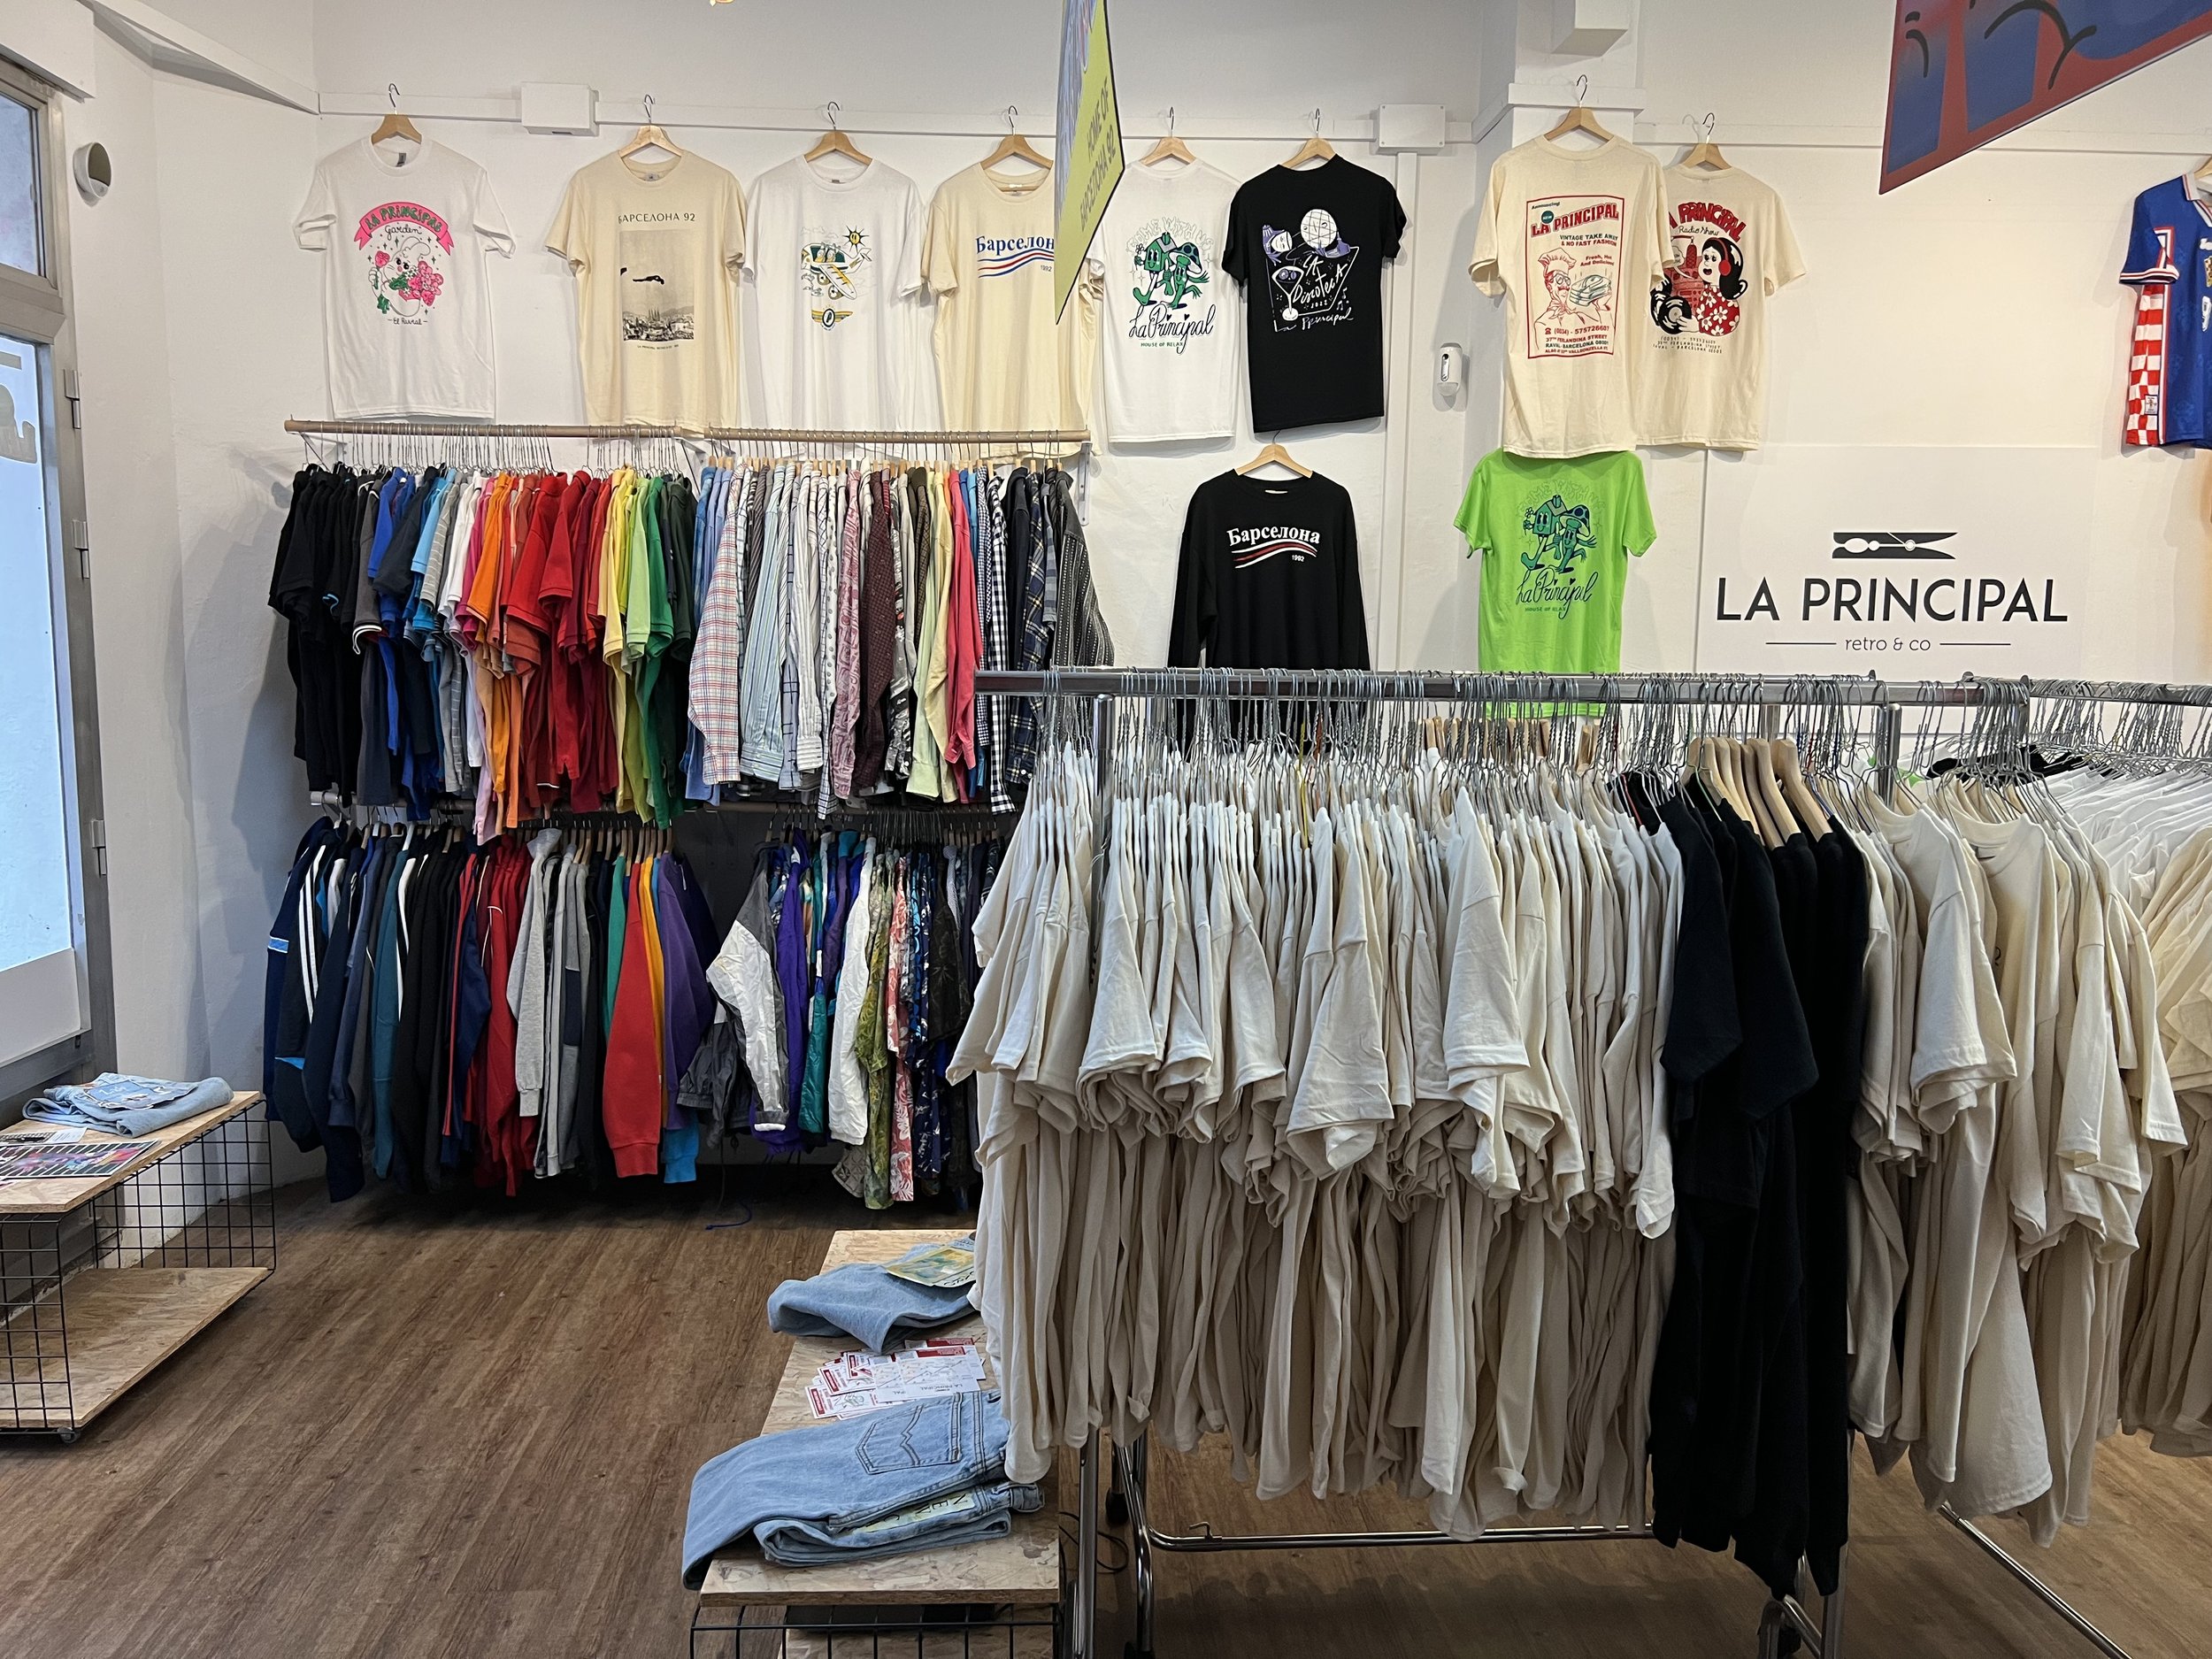 Tienda ropa y camisetas ubicadas en Barcelona — La Principal Retro & Co. Tiendas de ropa vintage en Barcelona y camisetas exclusivas